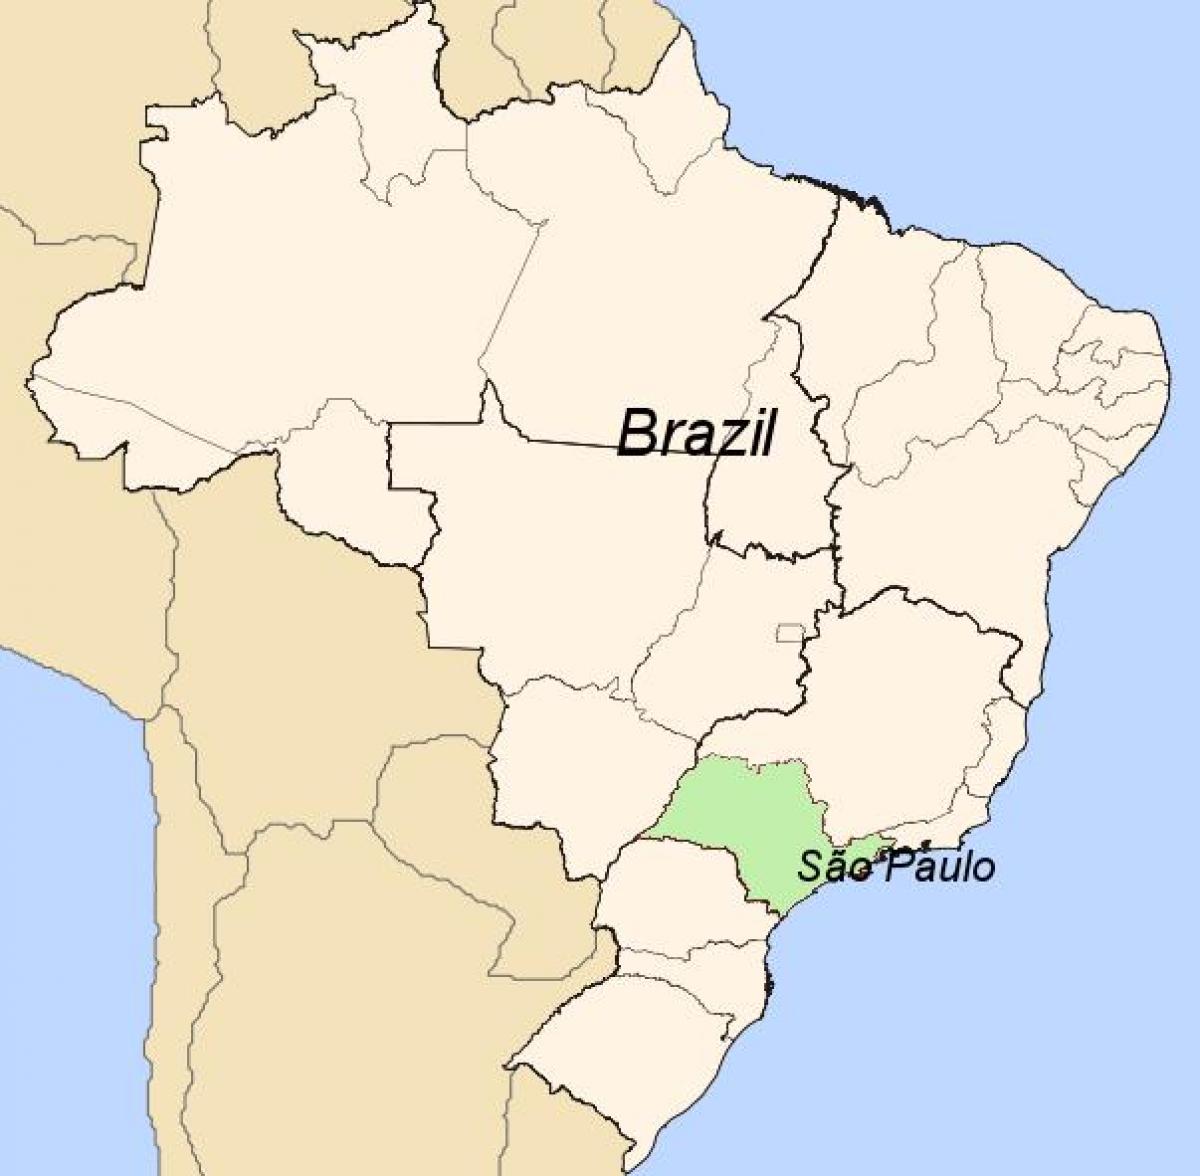 Mapa Sao Paulo-Brasil